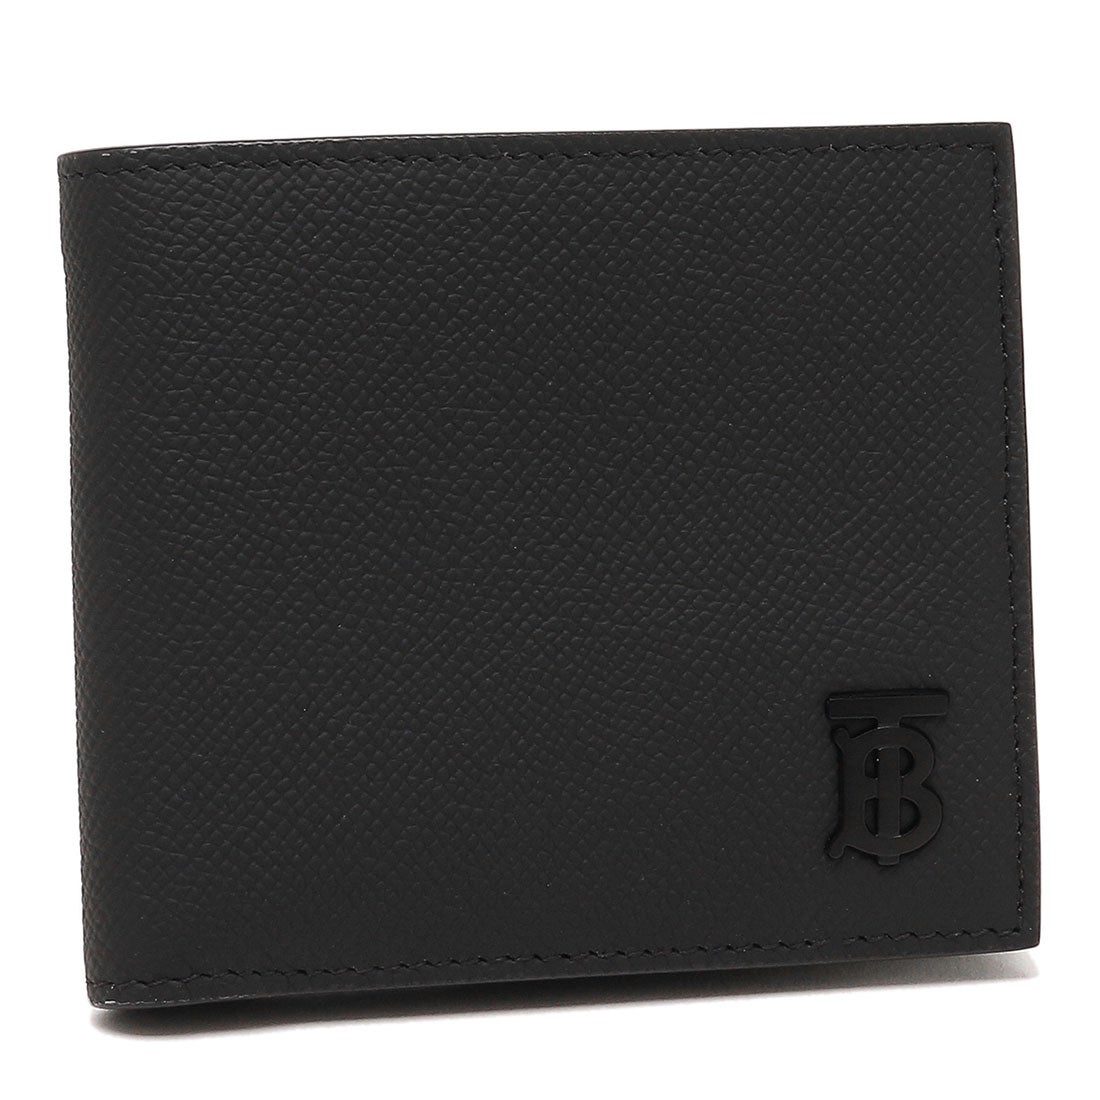 BURBERRY バーバリー 二つ折り財布 ブラック メンズ ブランド - 小物